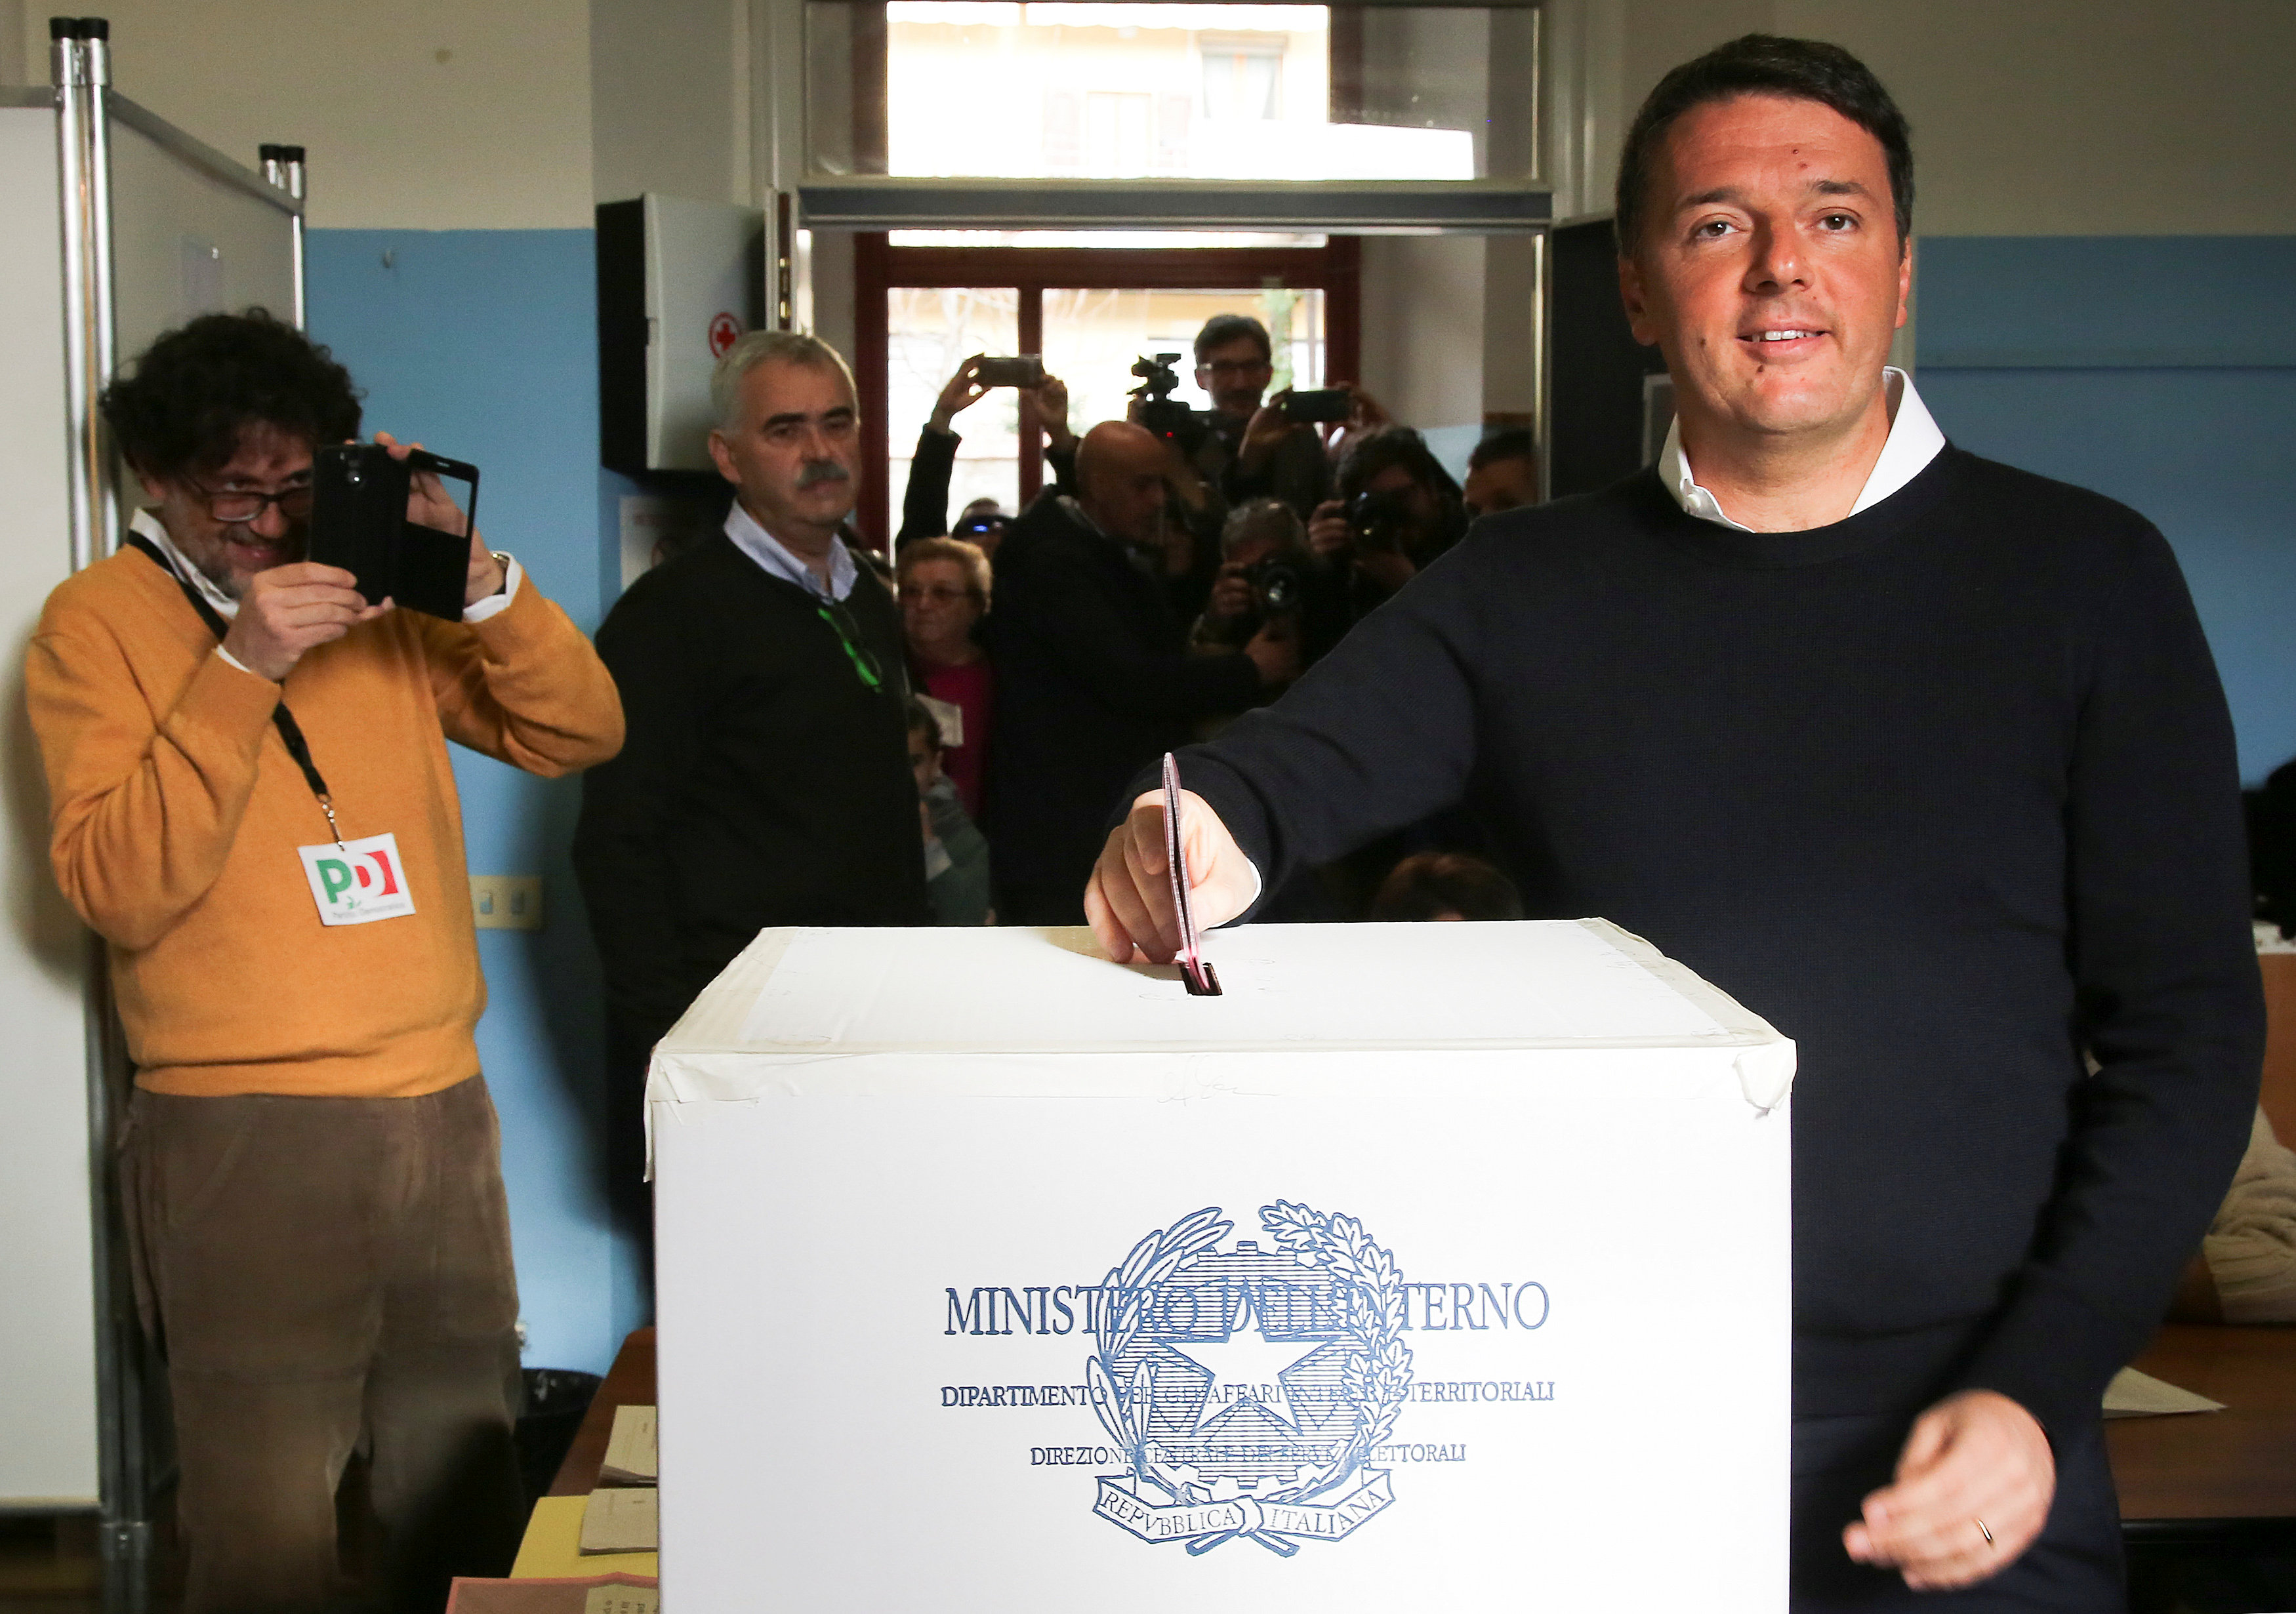 Υψηλή συμμετοχή στο κρίσιμο δημοψήφισμα της Ιταλίας